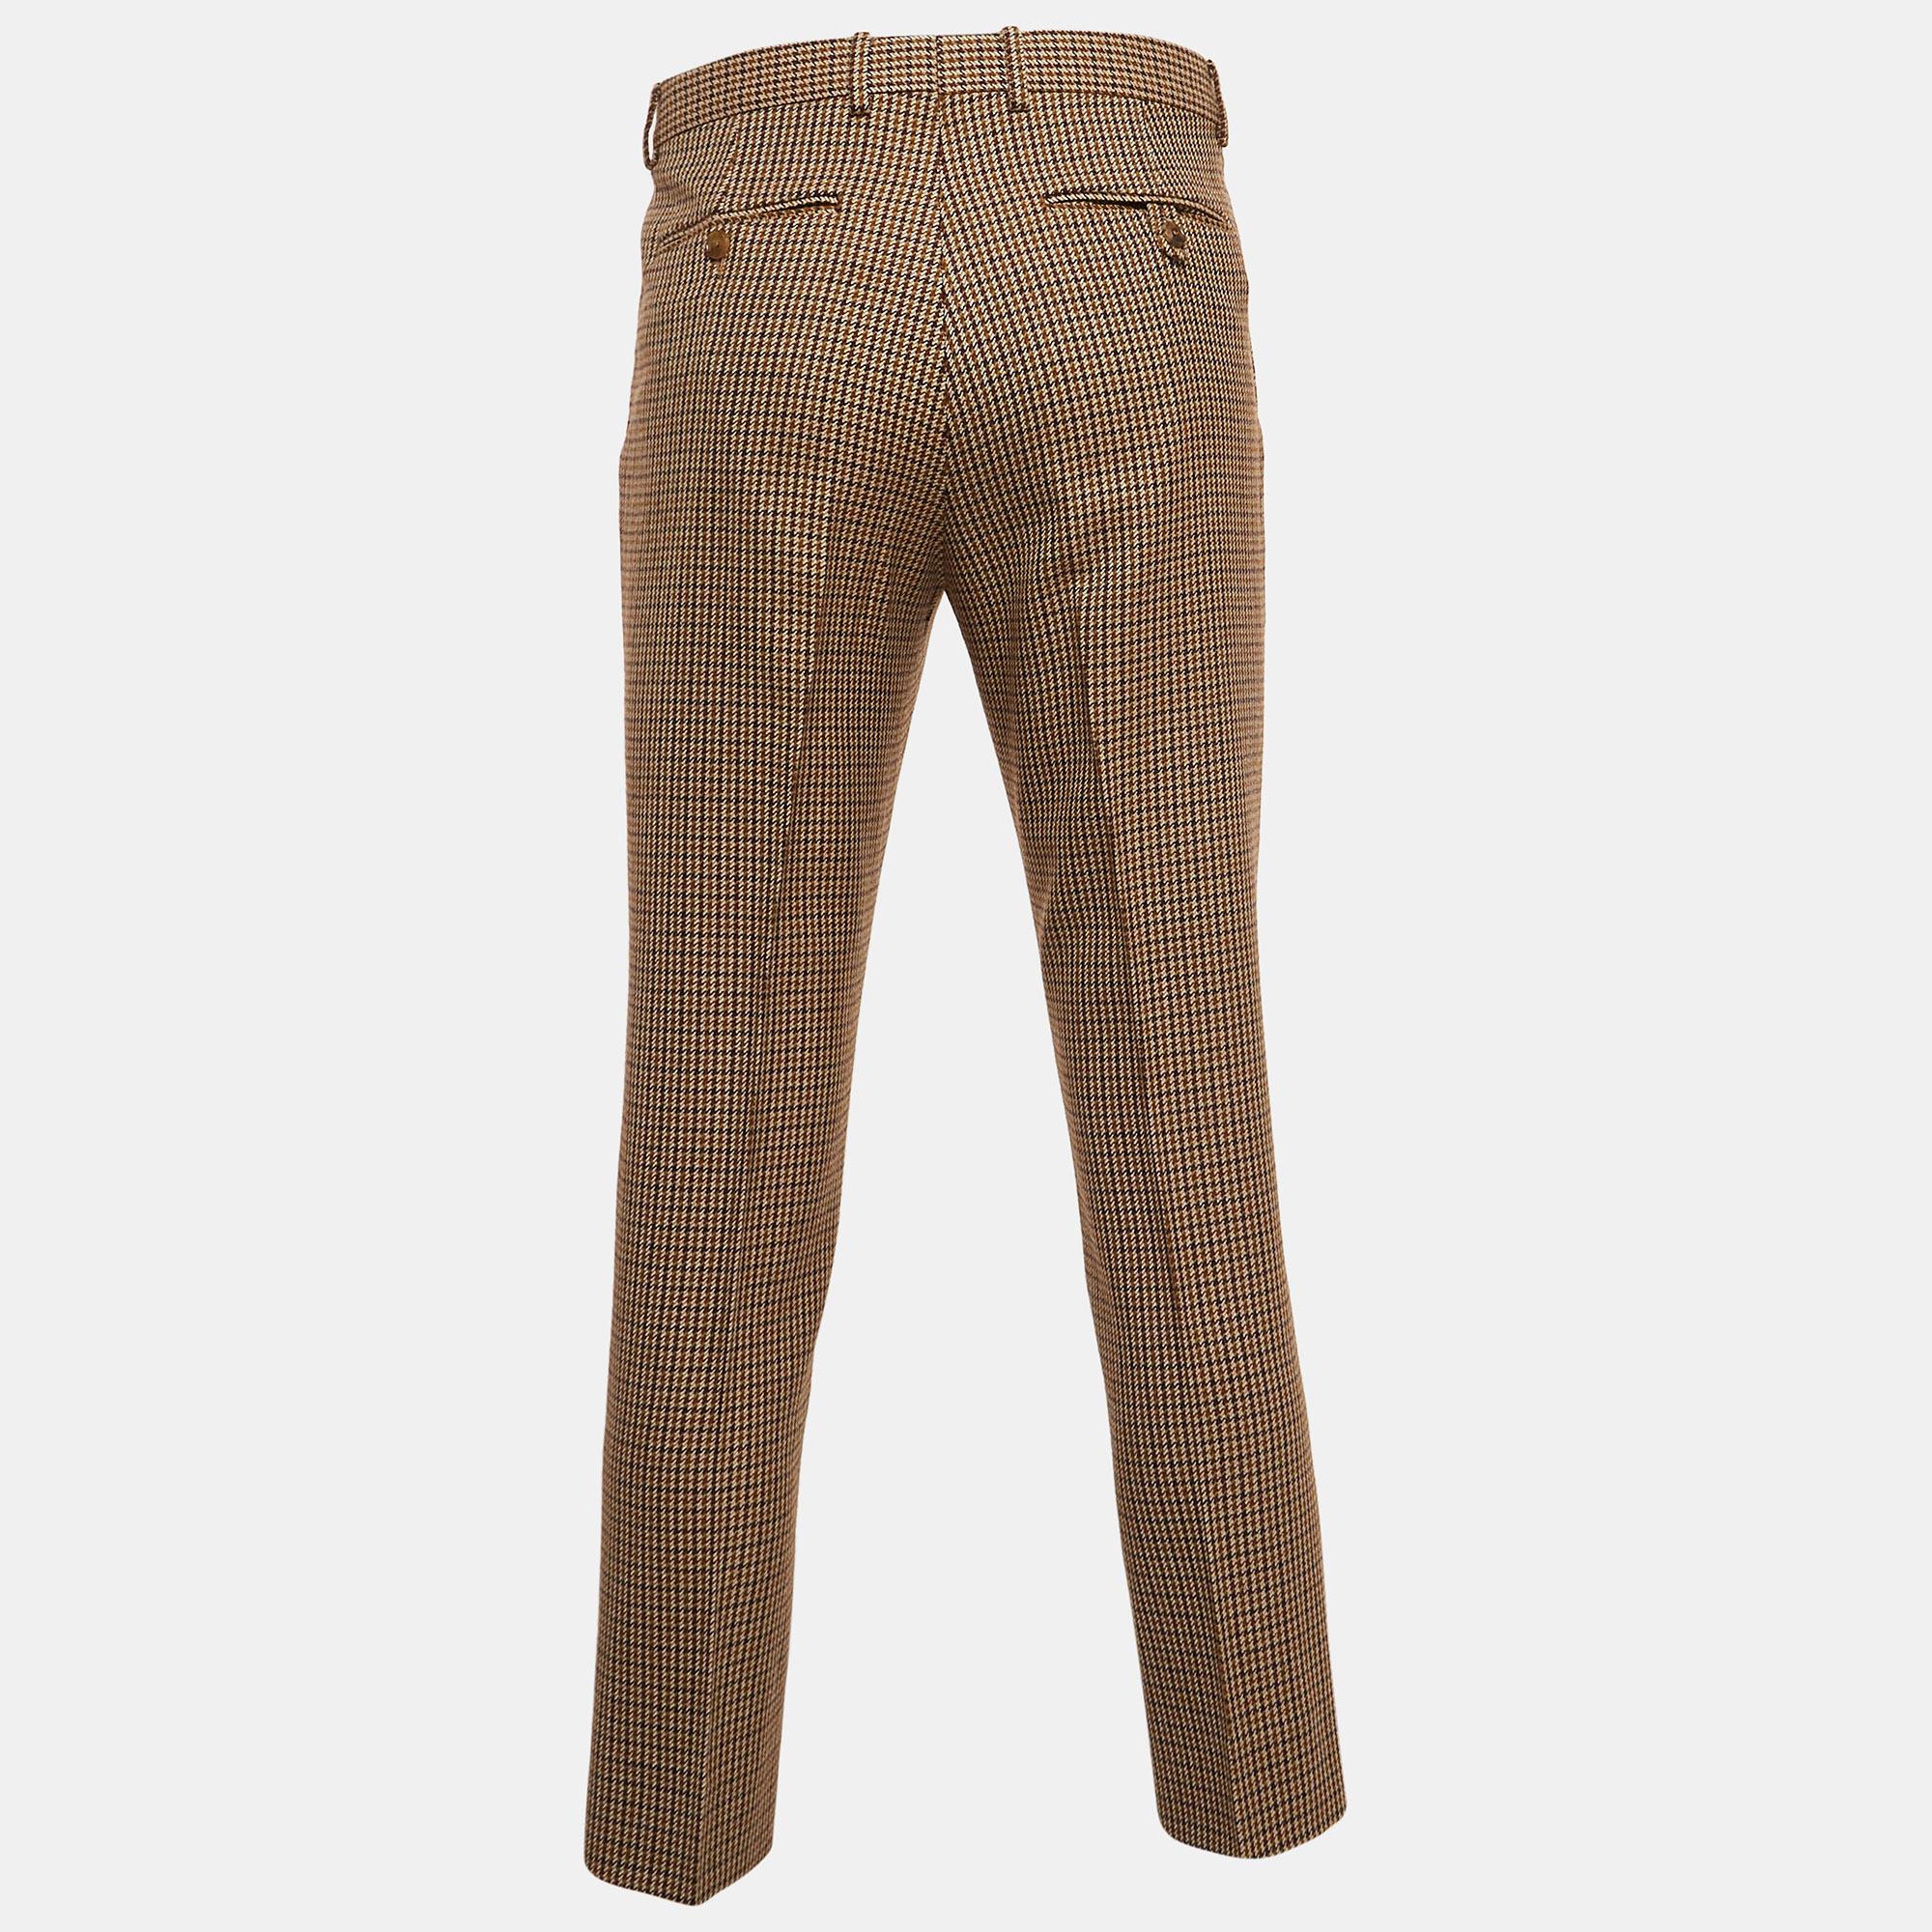 Cette paire de pantalons Gucci rehausse votre tenue de soirée. Conçu dans une silhouette et une coupe superbes, ce pantalon vous donnera à coup sûr une allure élégante.

